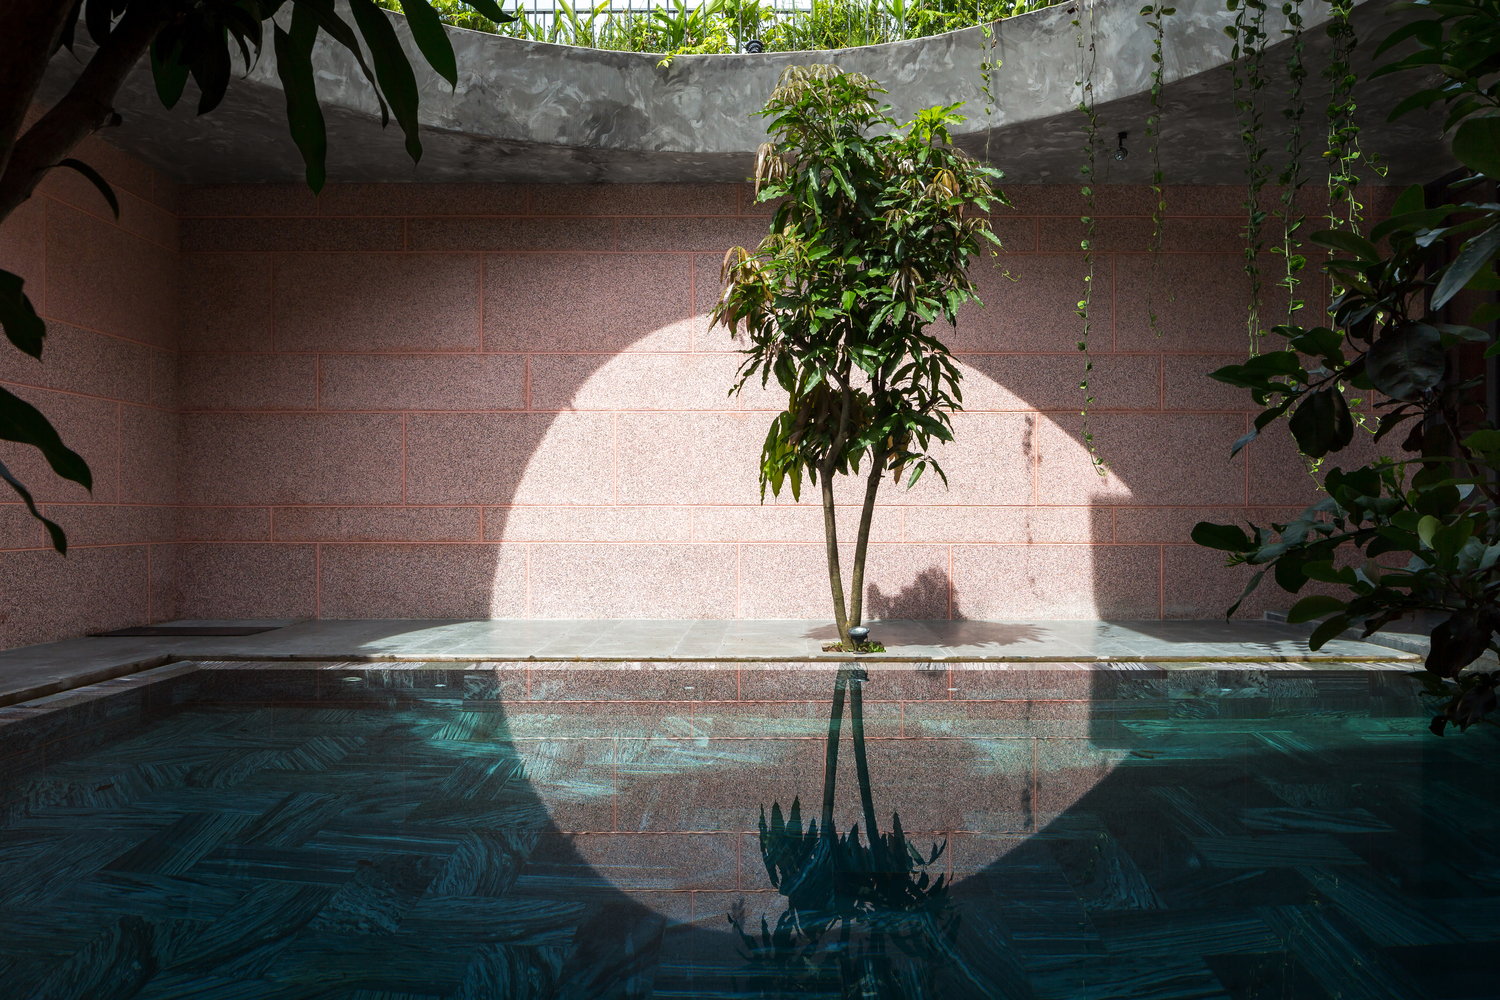 Pink House: Ngôi nhà ngập sắc hồng tại An Giang với điểm nhấn từ giếng trời và bể bơi siêu rộng - Ảnh 16